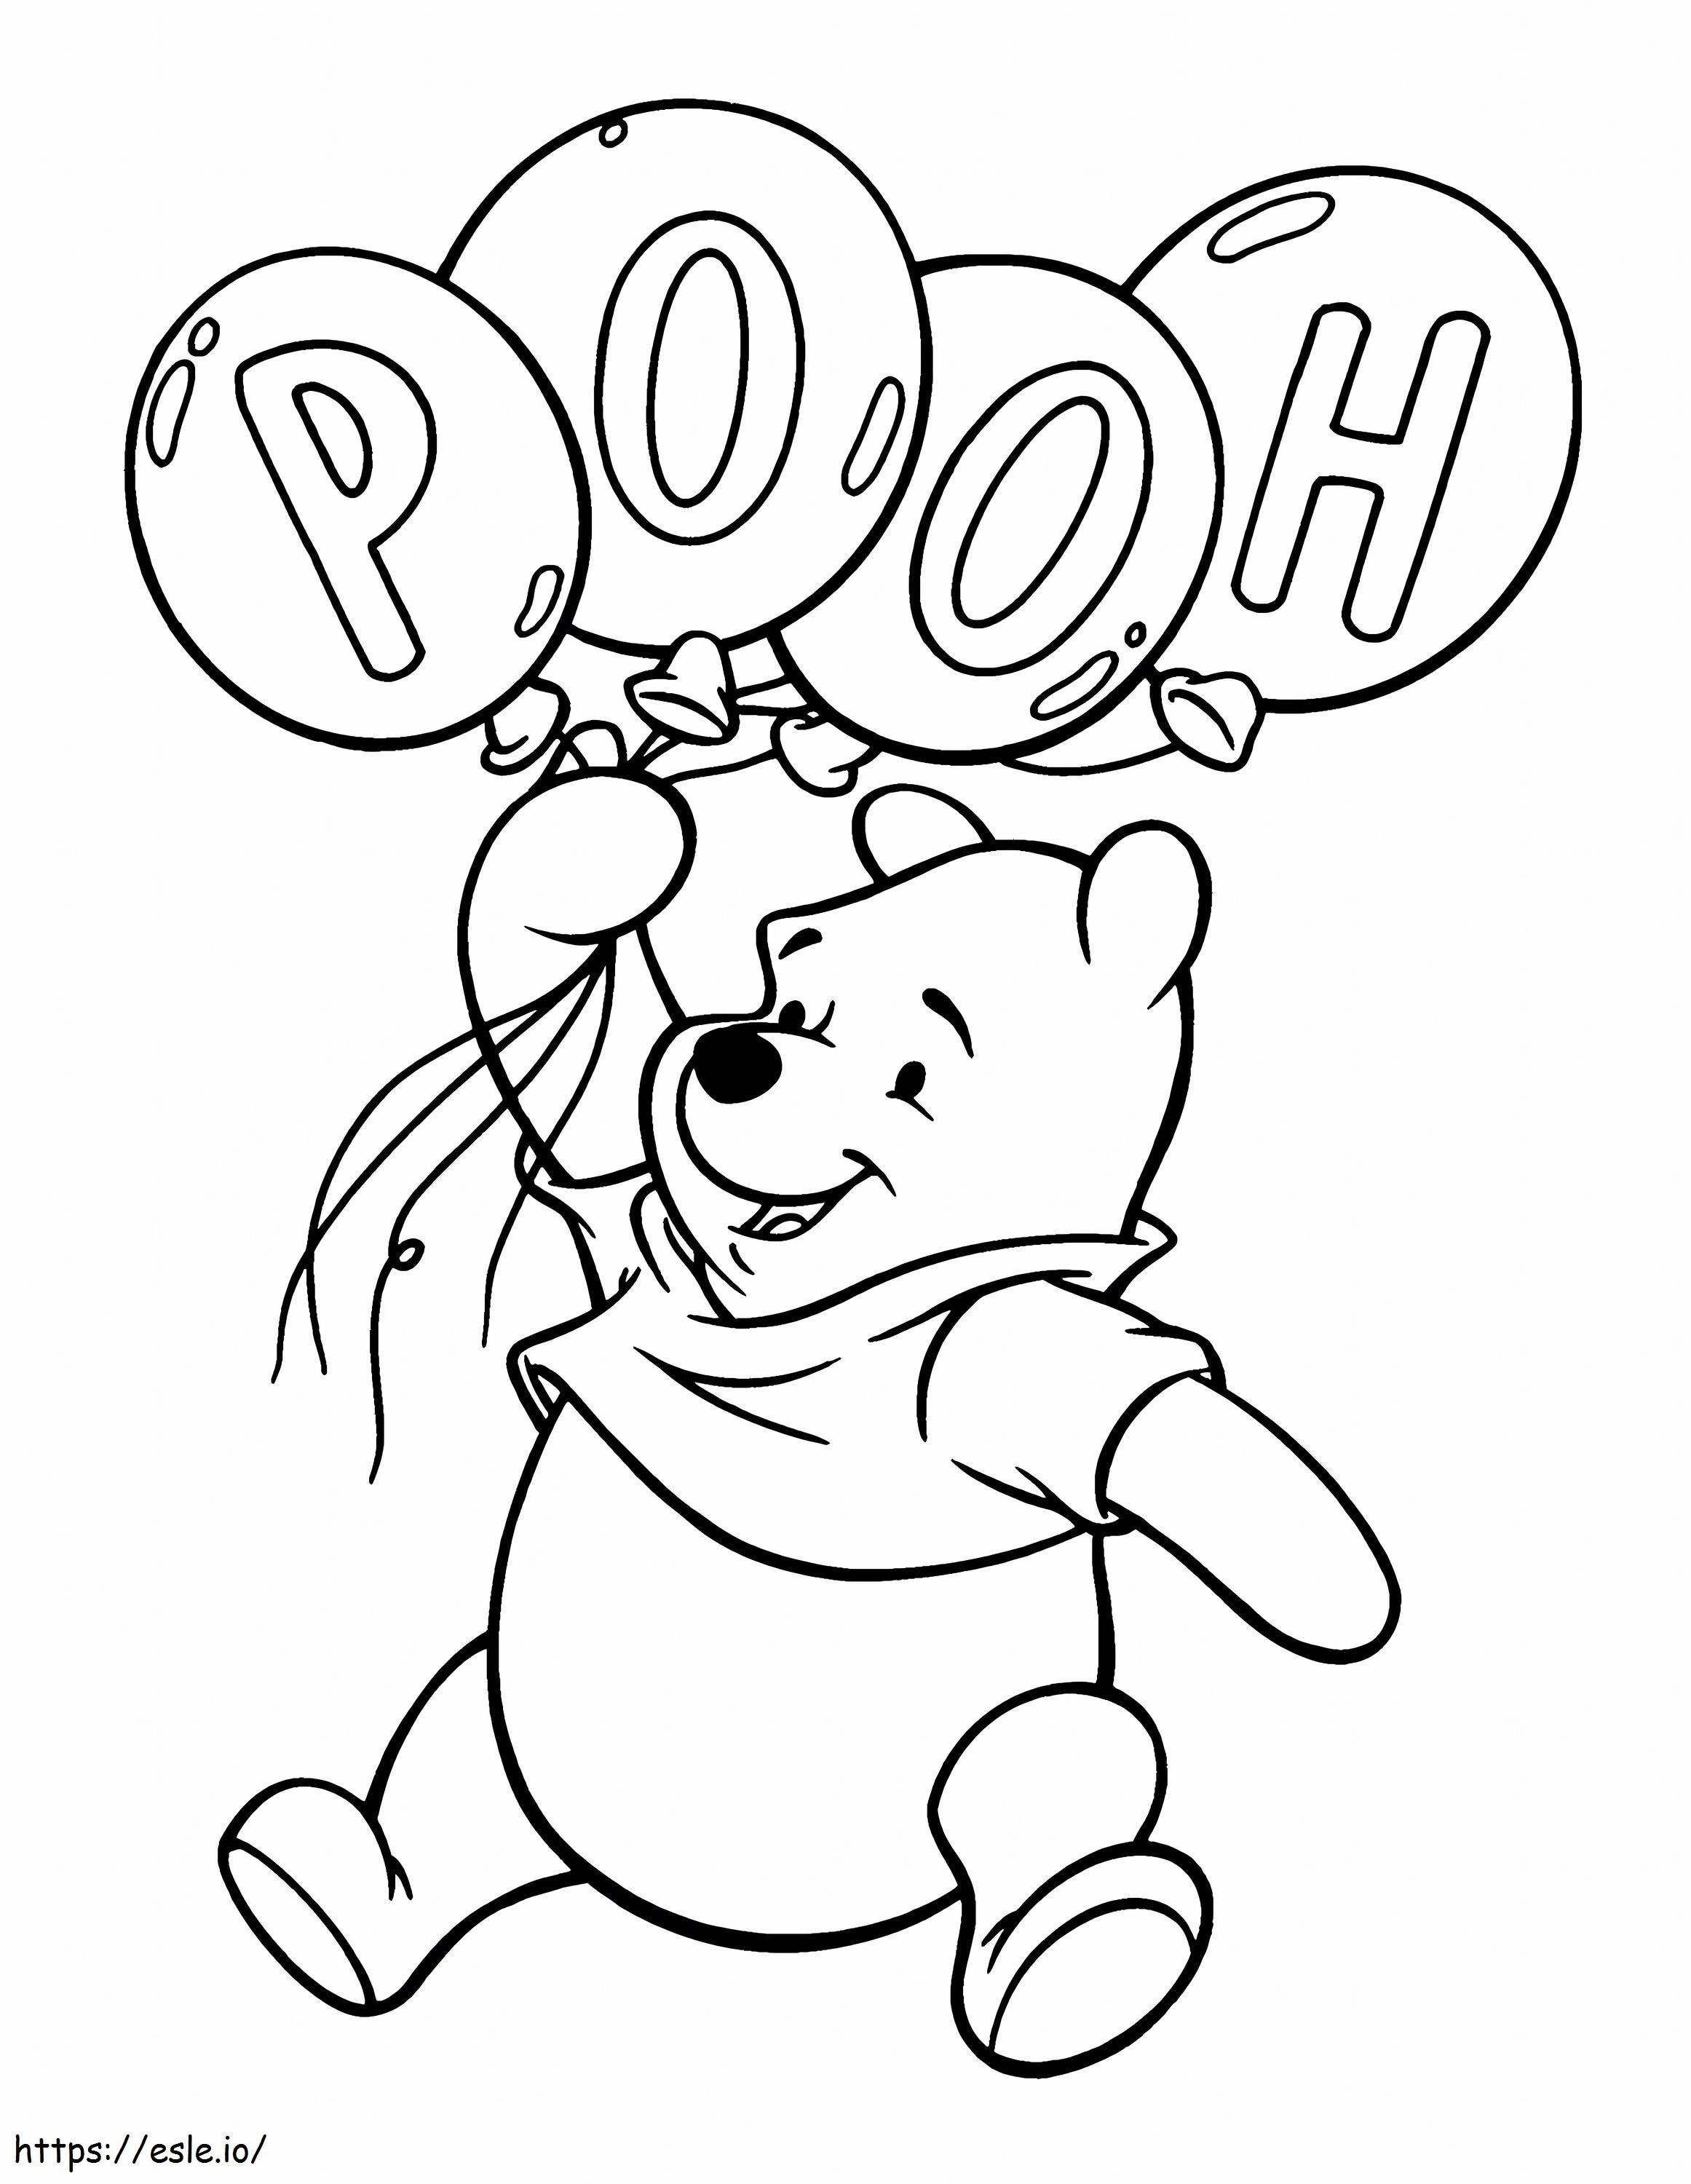 Ursinho Pooh segurando balões para colorir